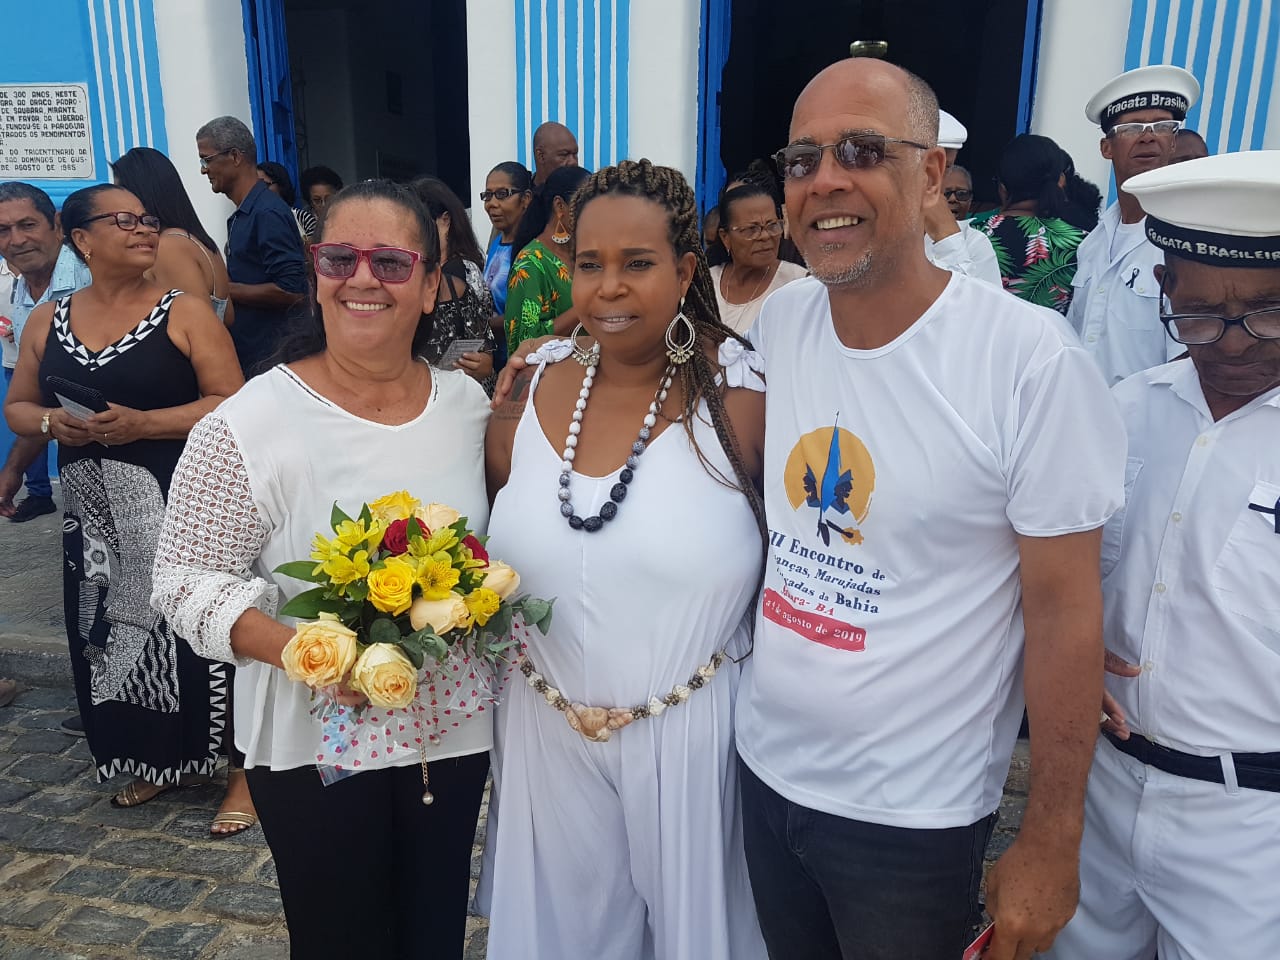 Prefeita Márcia de Saubara, Pan Batista Presidente do Conselho de Cultura e Nilo Trindade Conselheiro de Cultura